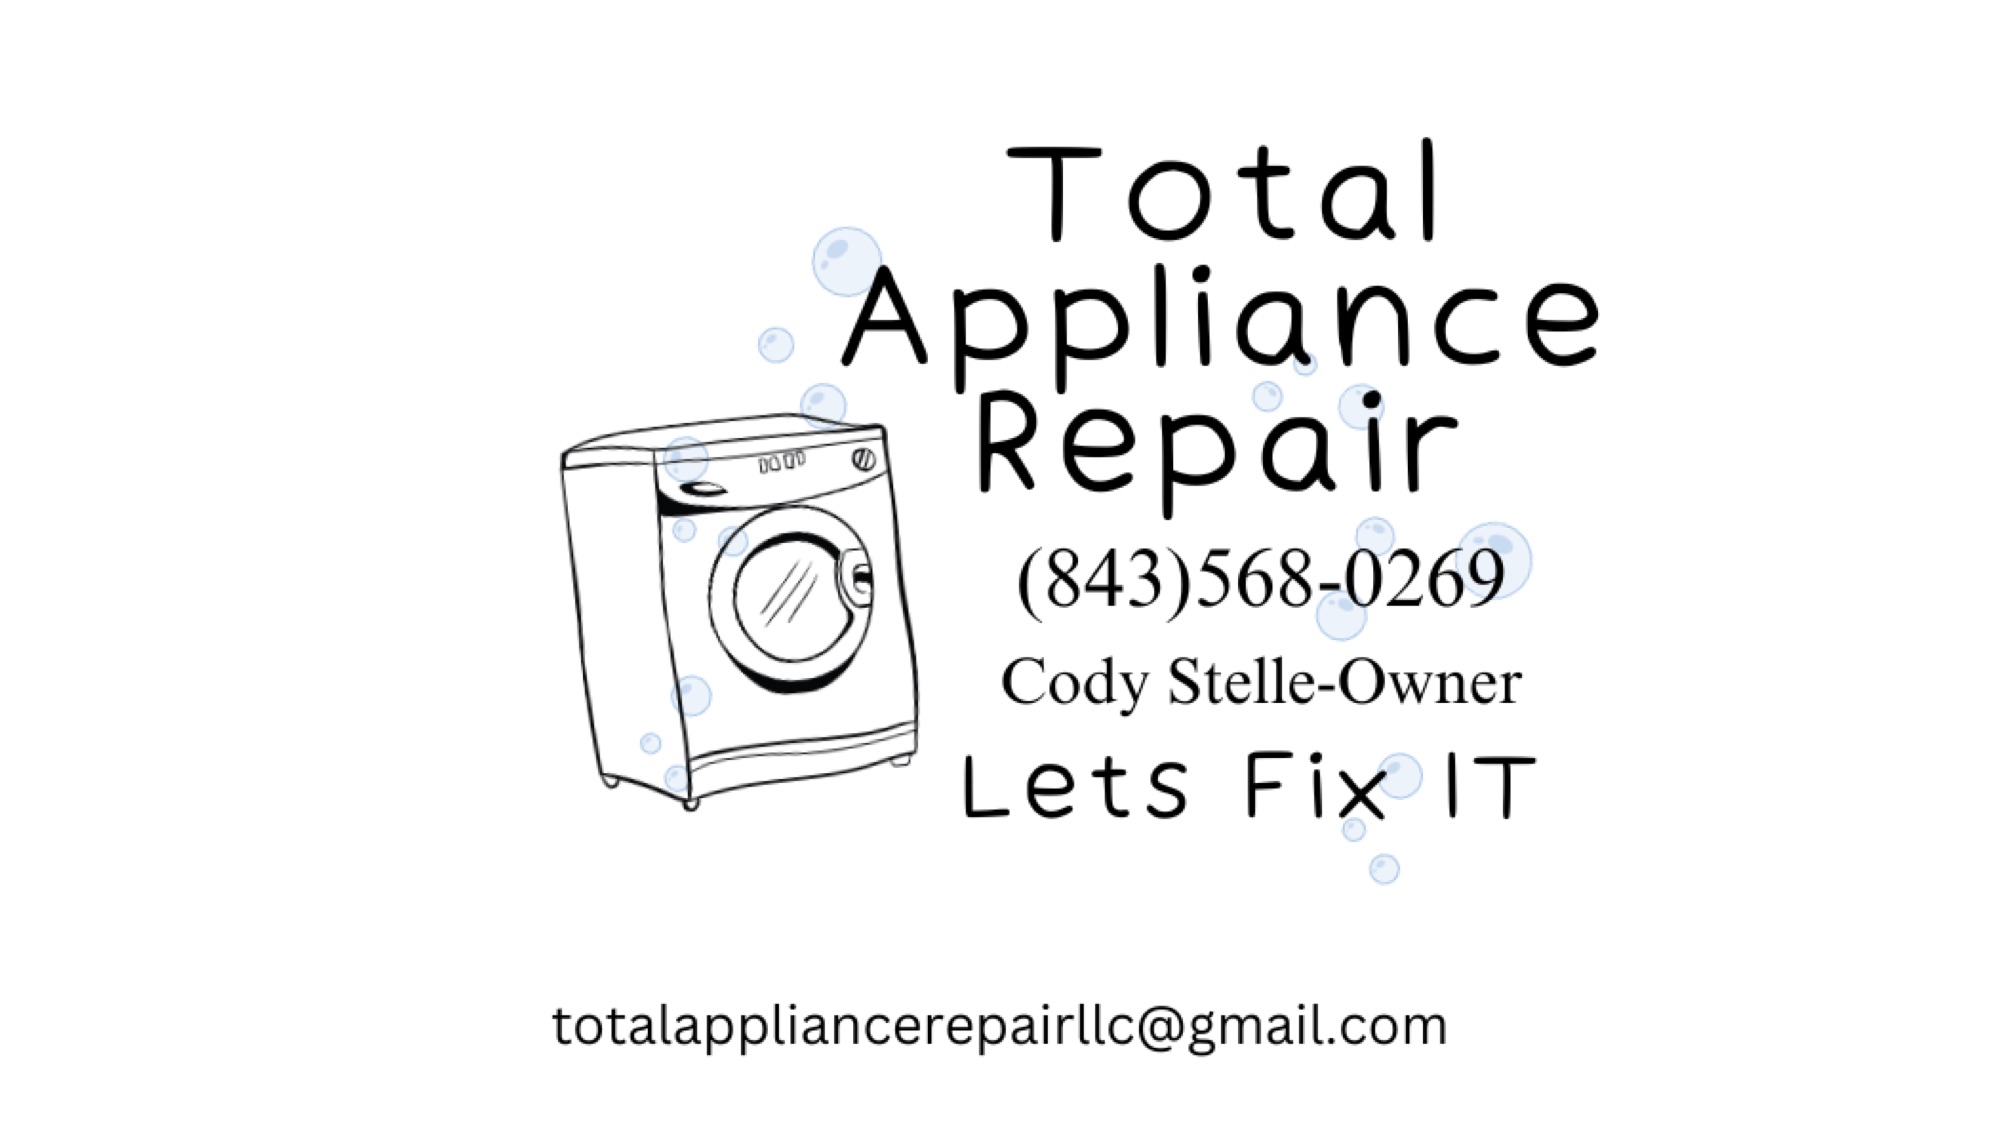 Total Appliance Repair LLC Logo